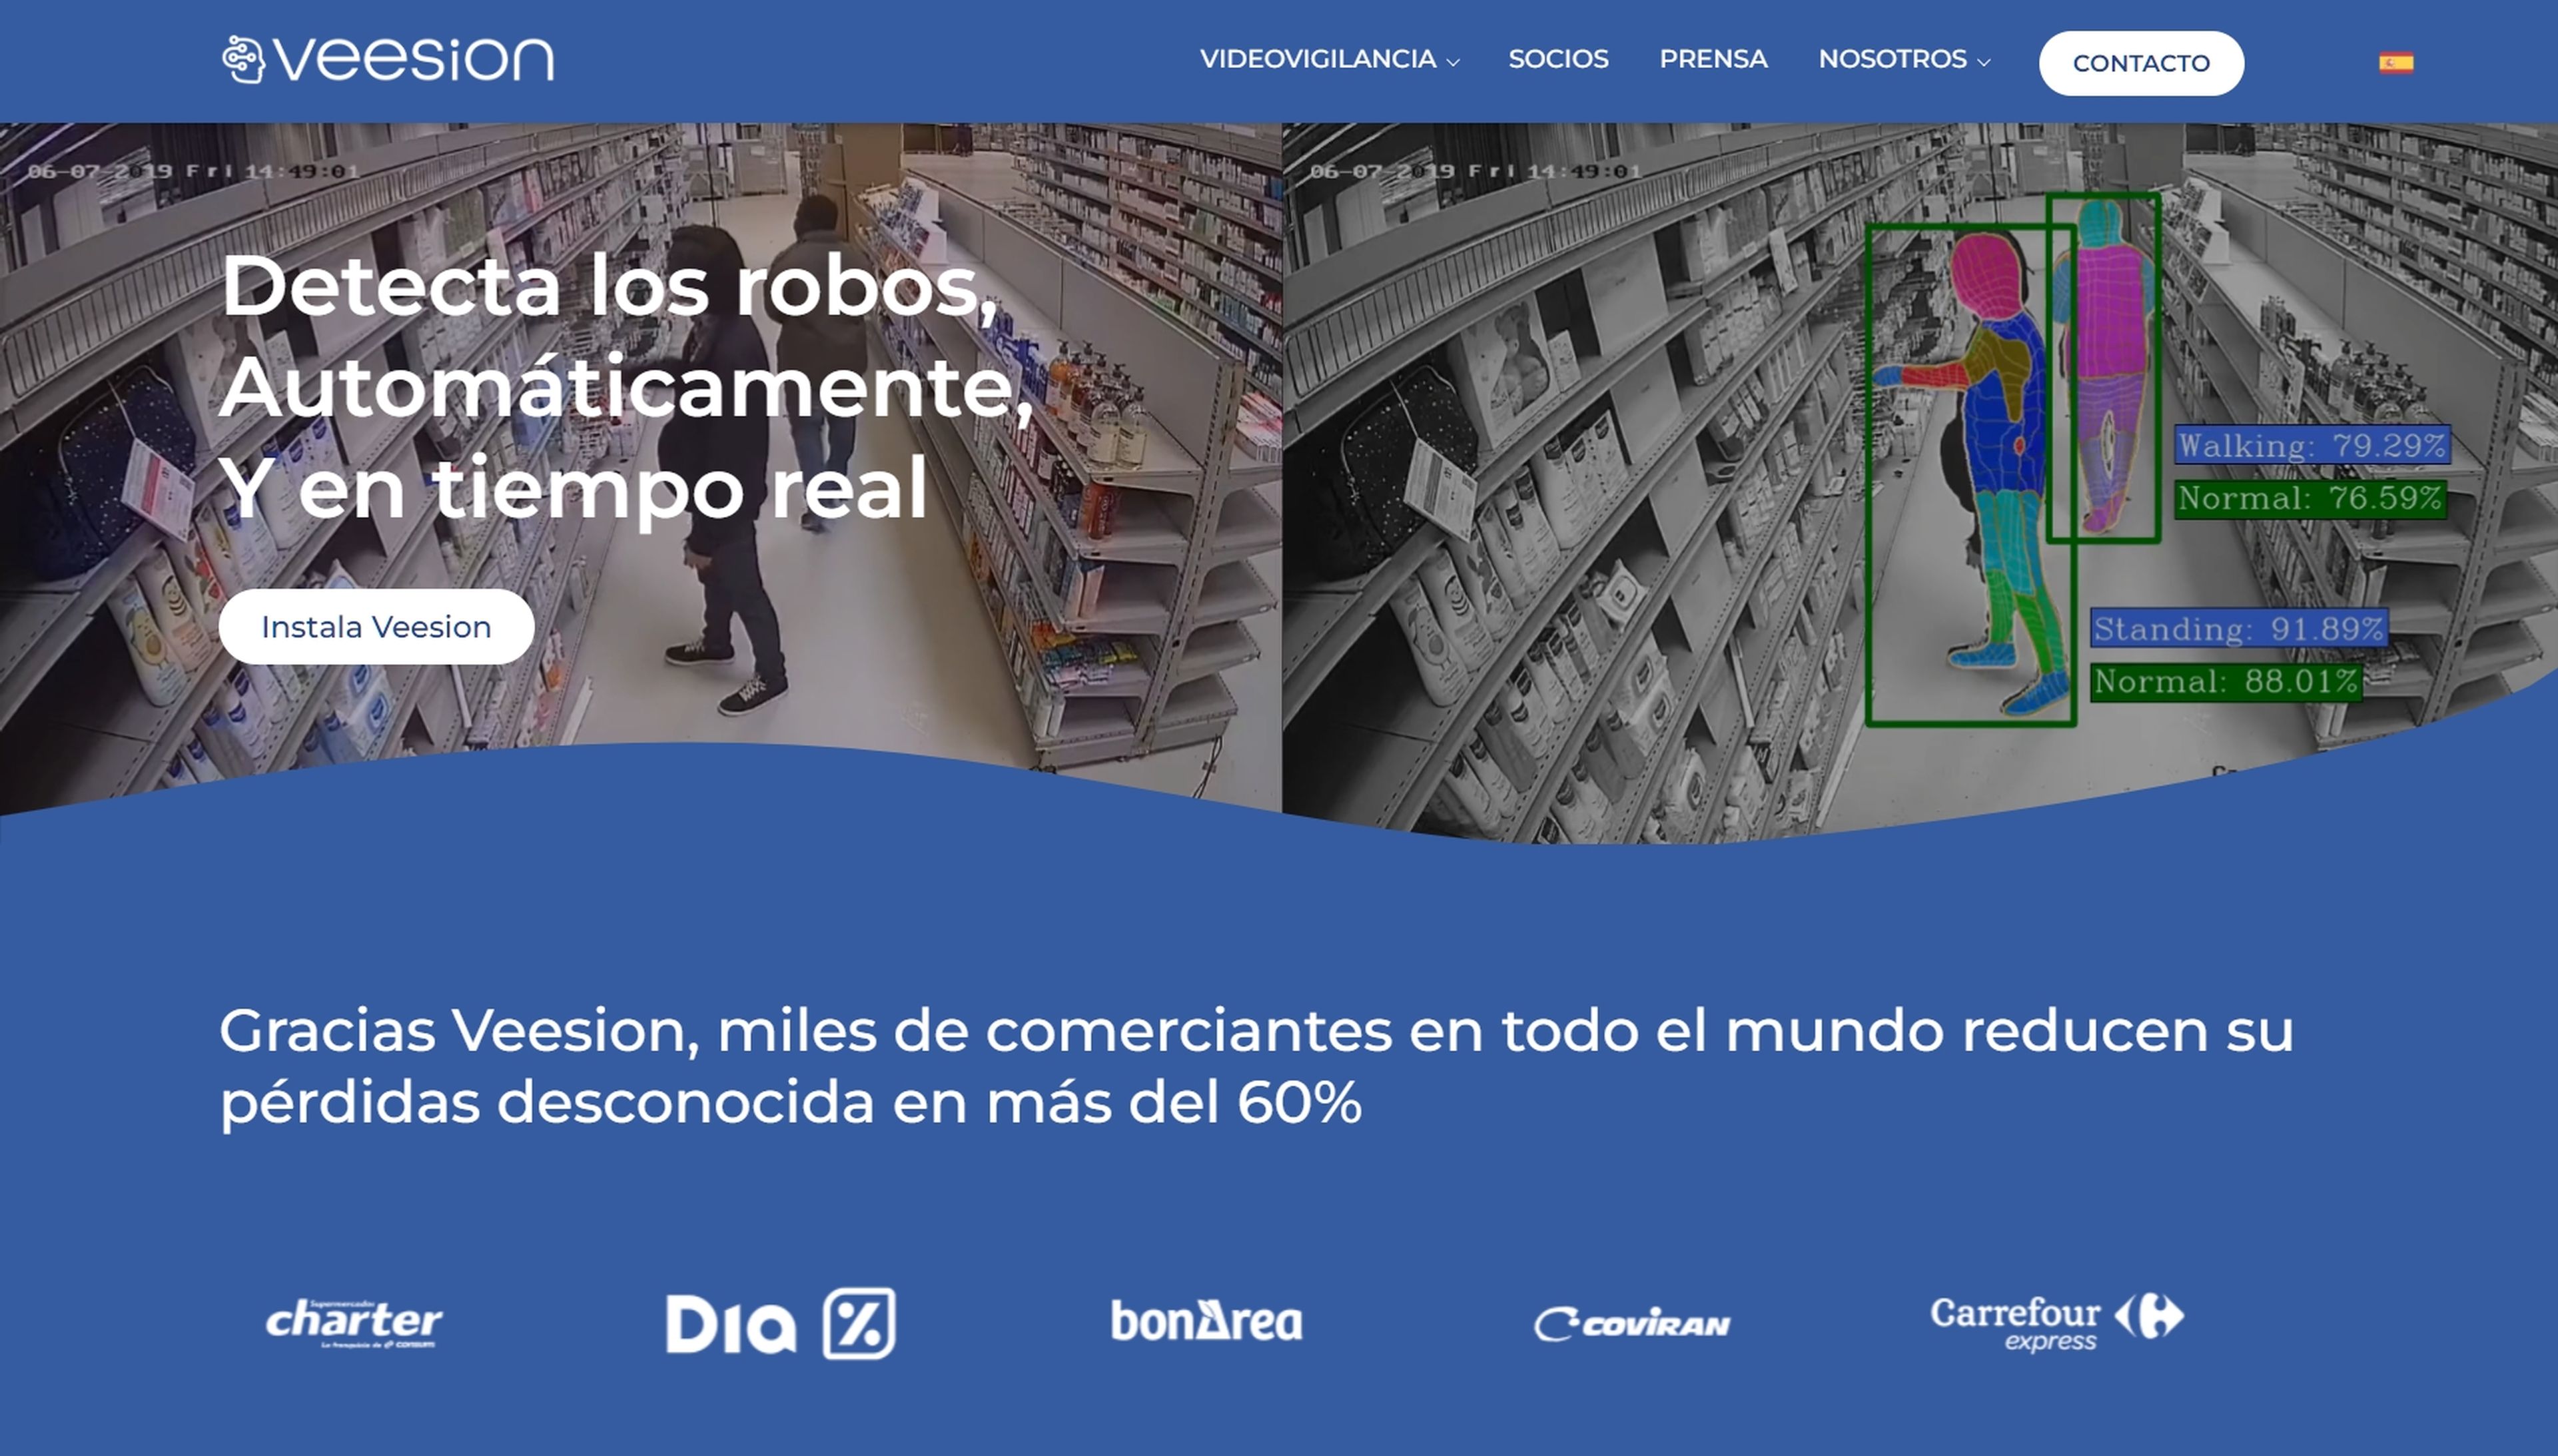 Veesion, la IA que detecta a los ladrones por sus gestos, ya funciona en muchos supermercados españoles